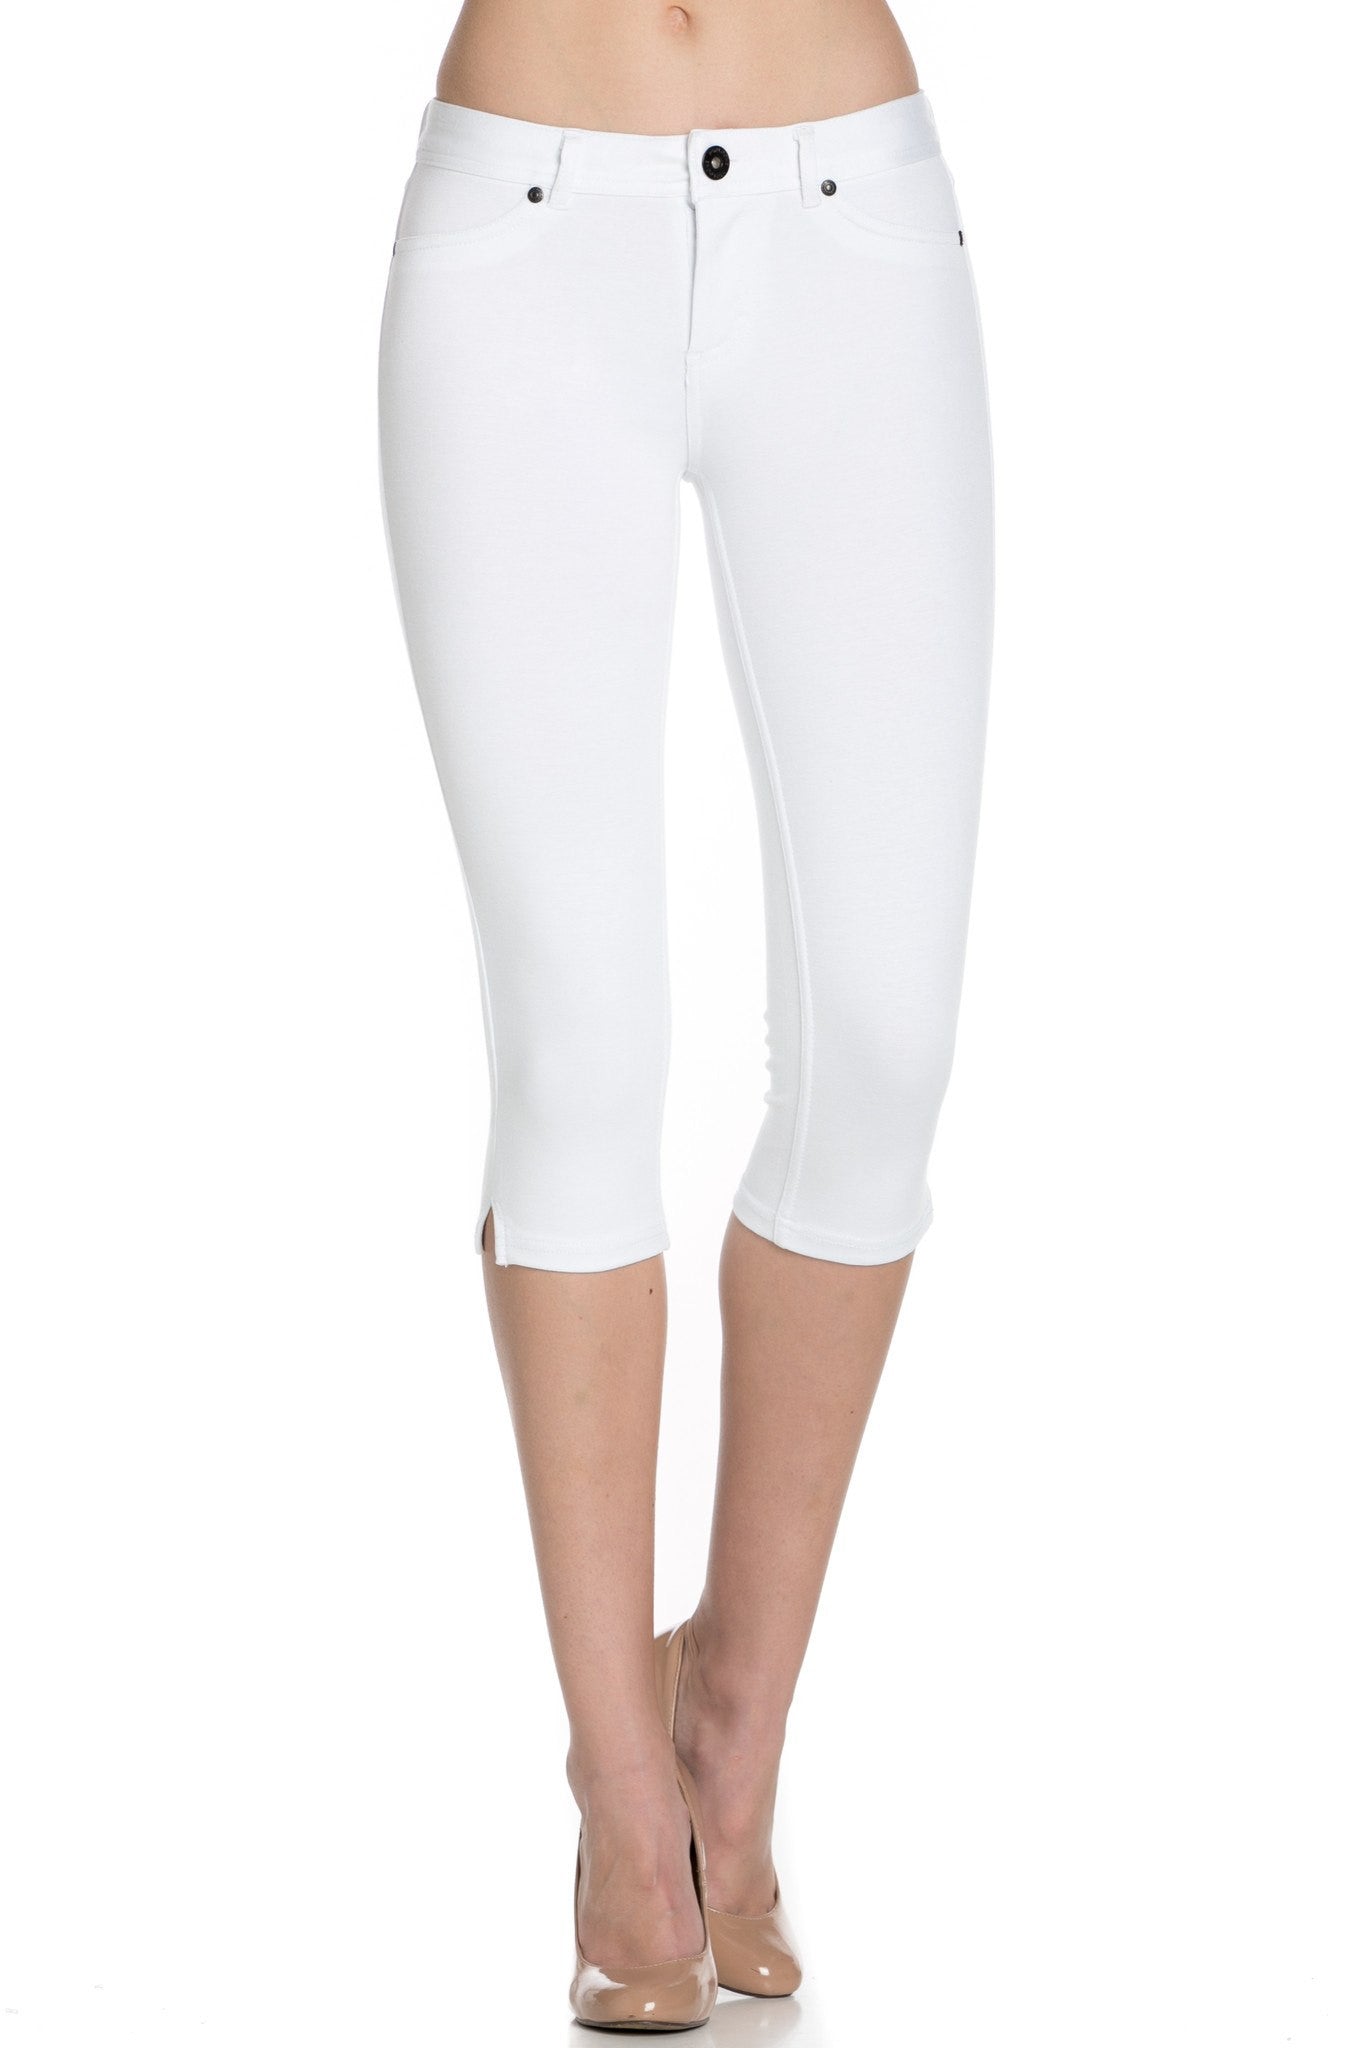 4 Way Stretchy Ponte Knit Capri Skinny Jeans (White)